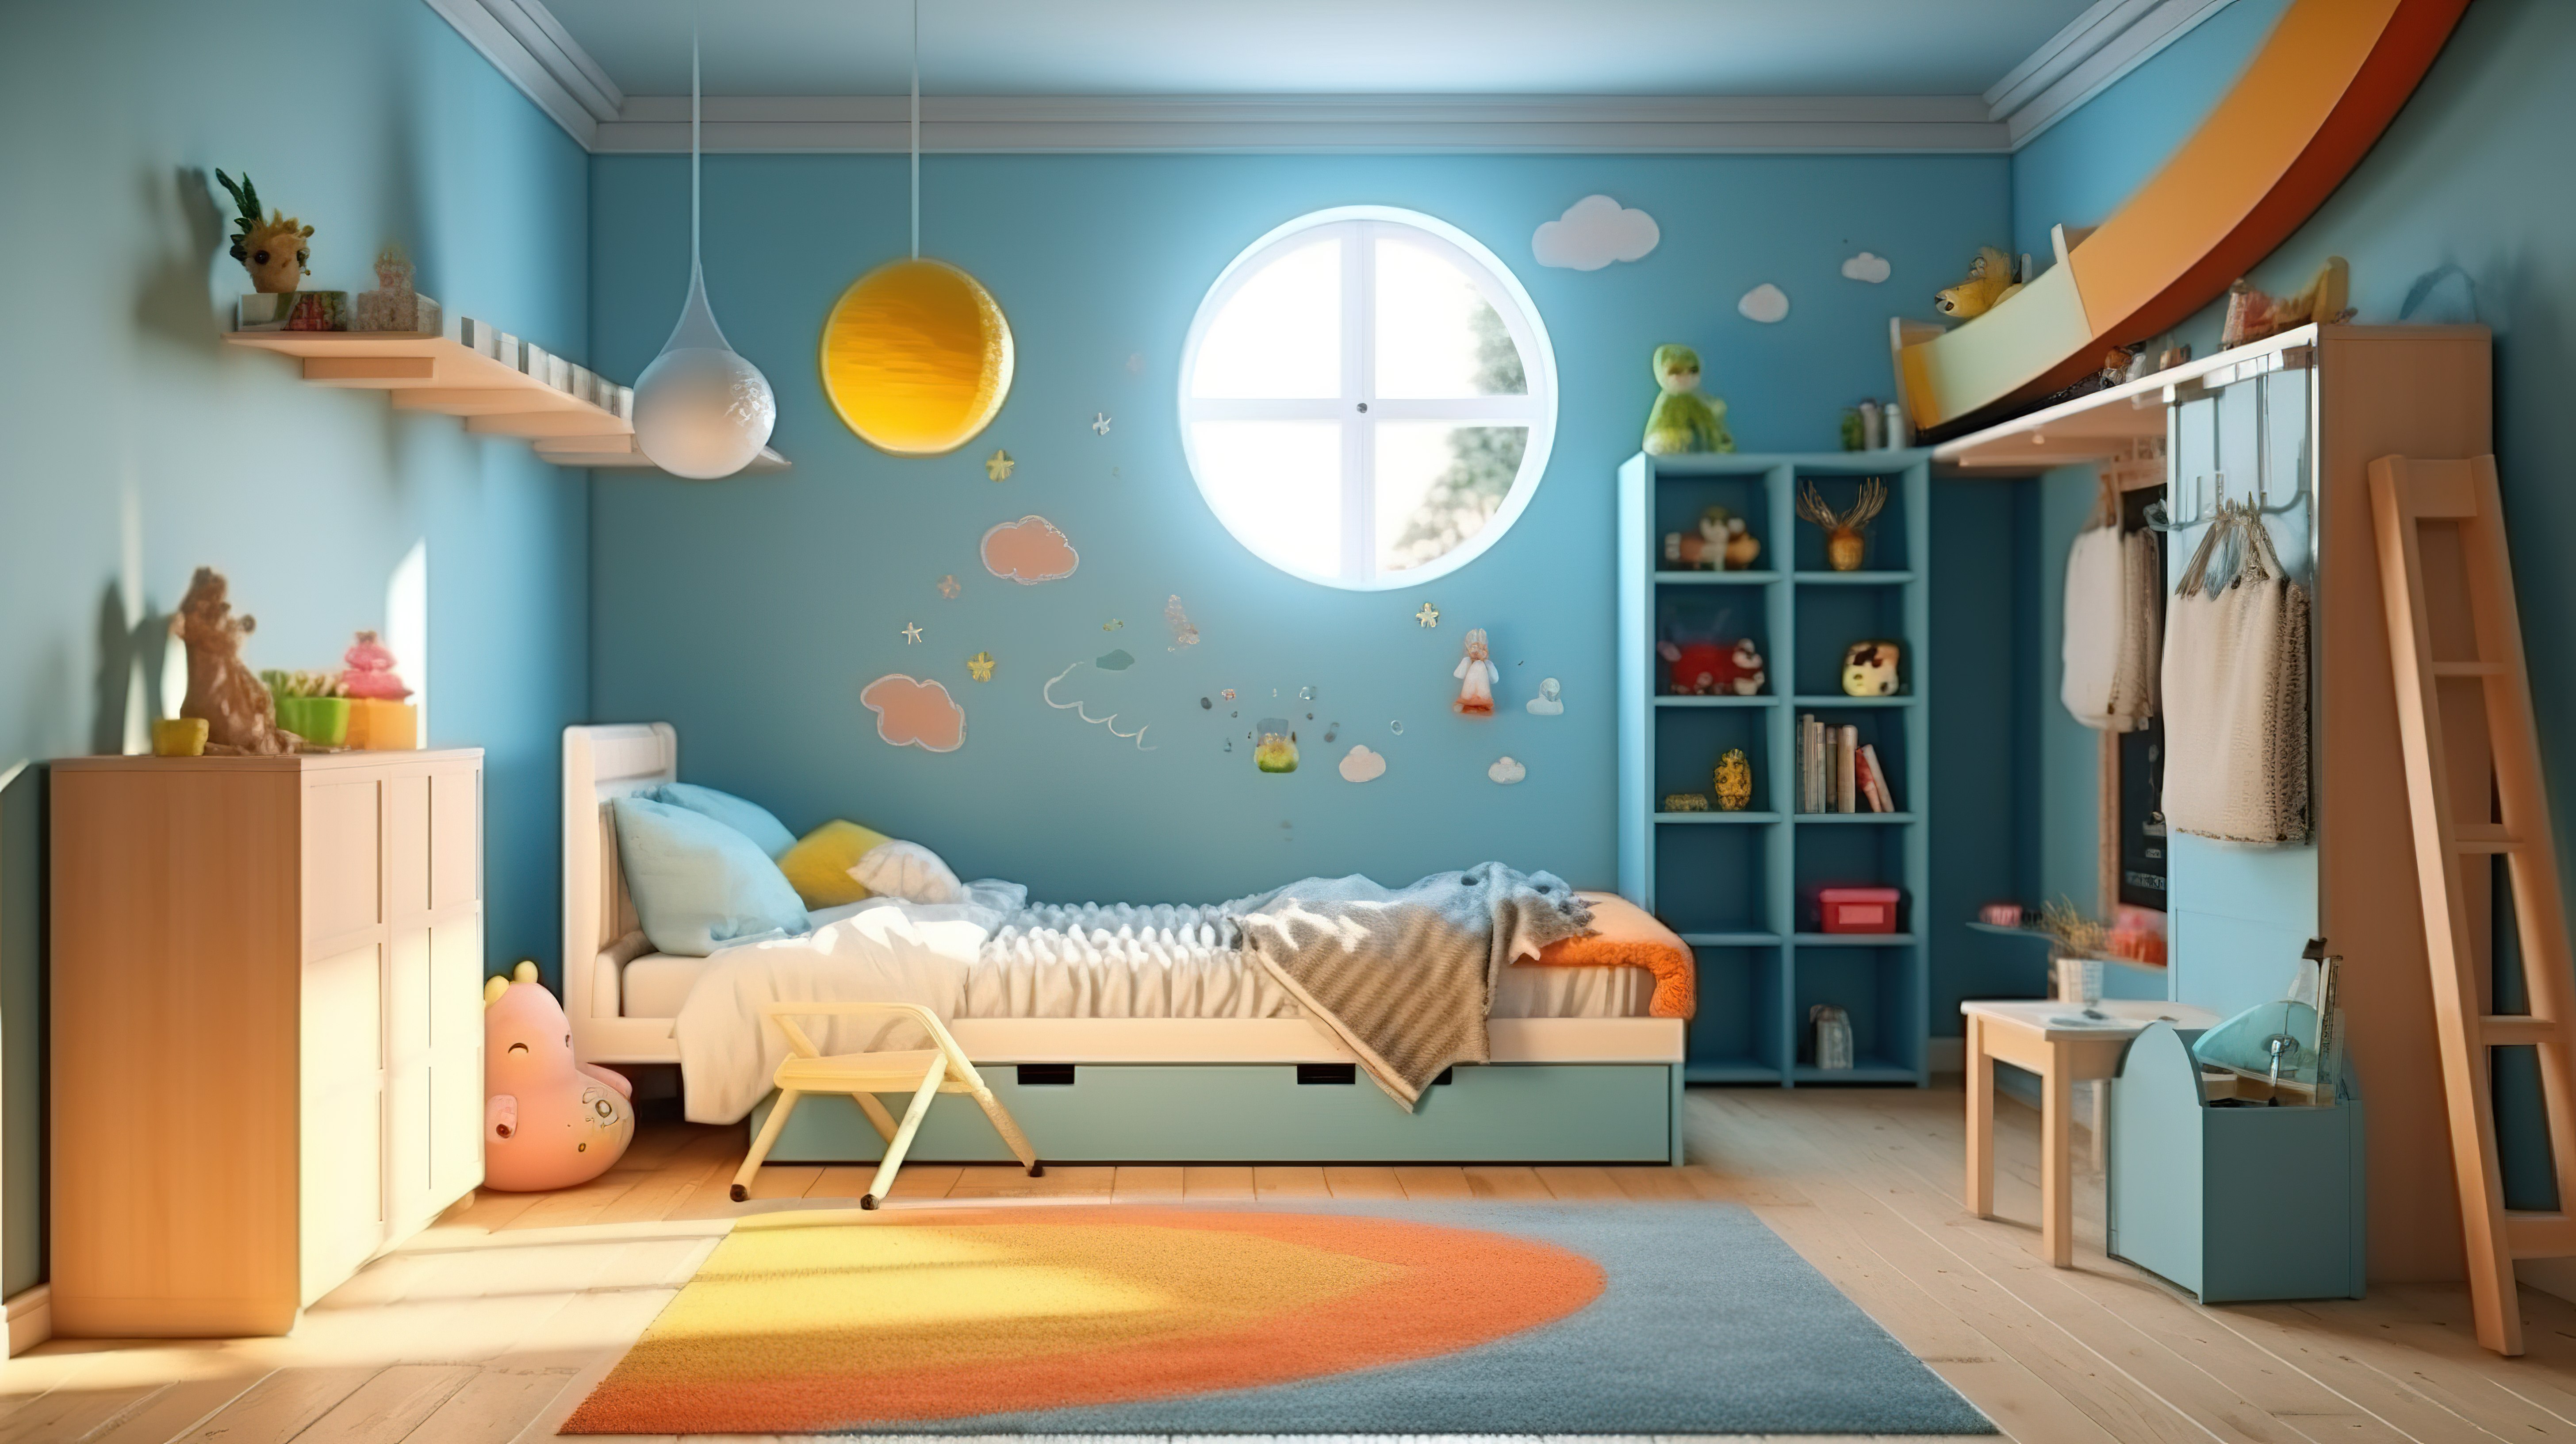 家庭或公寓中舒适卧室或儿童房的 3D 渲染图片